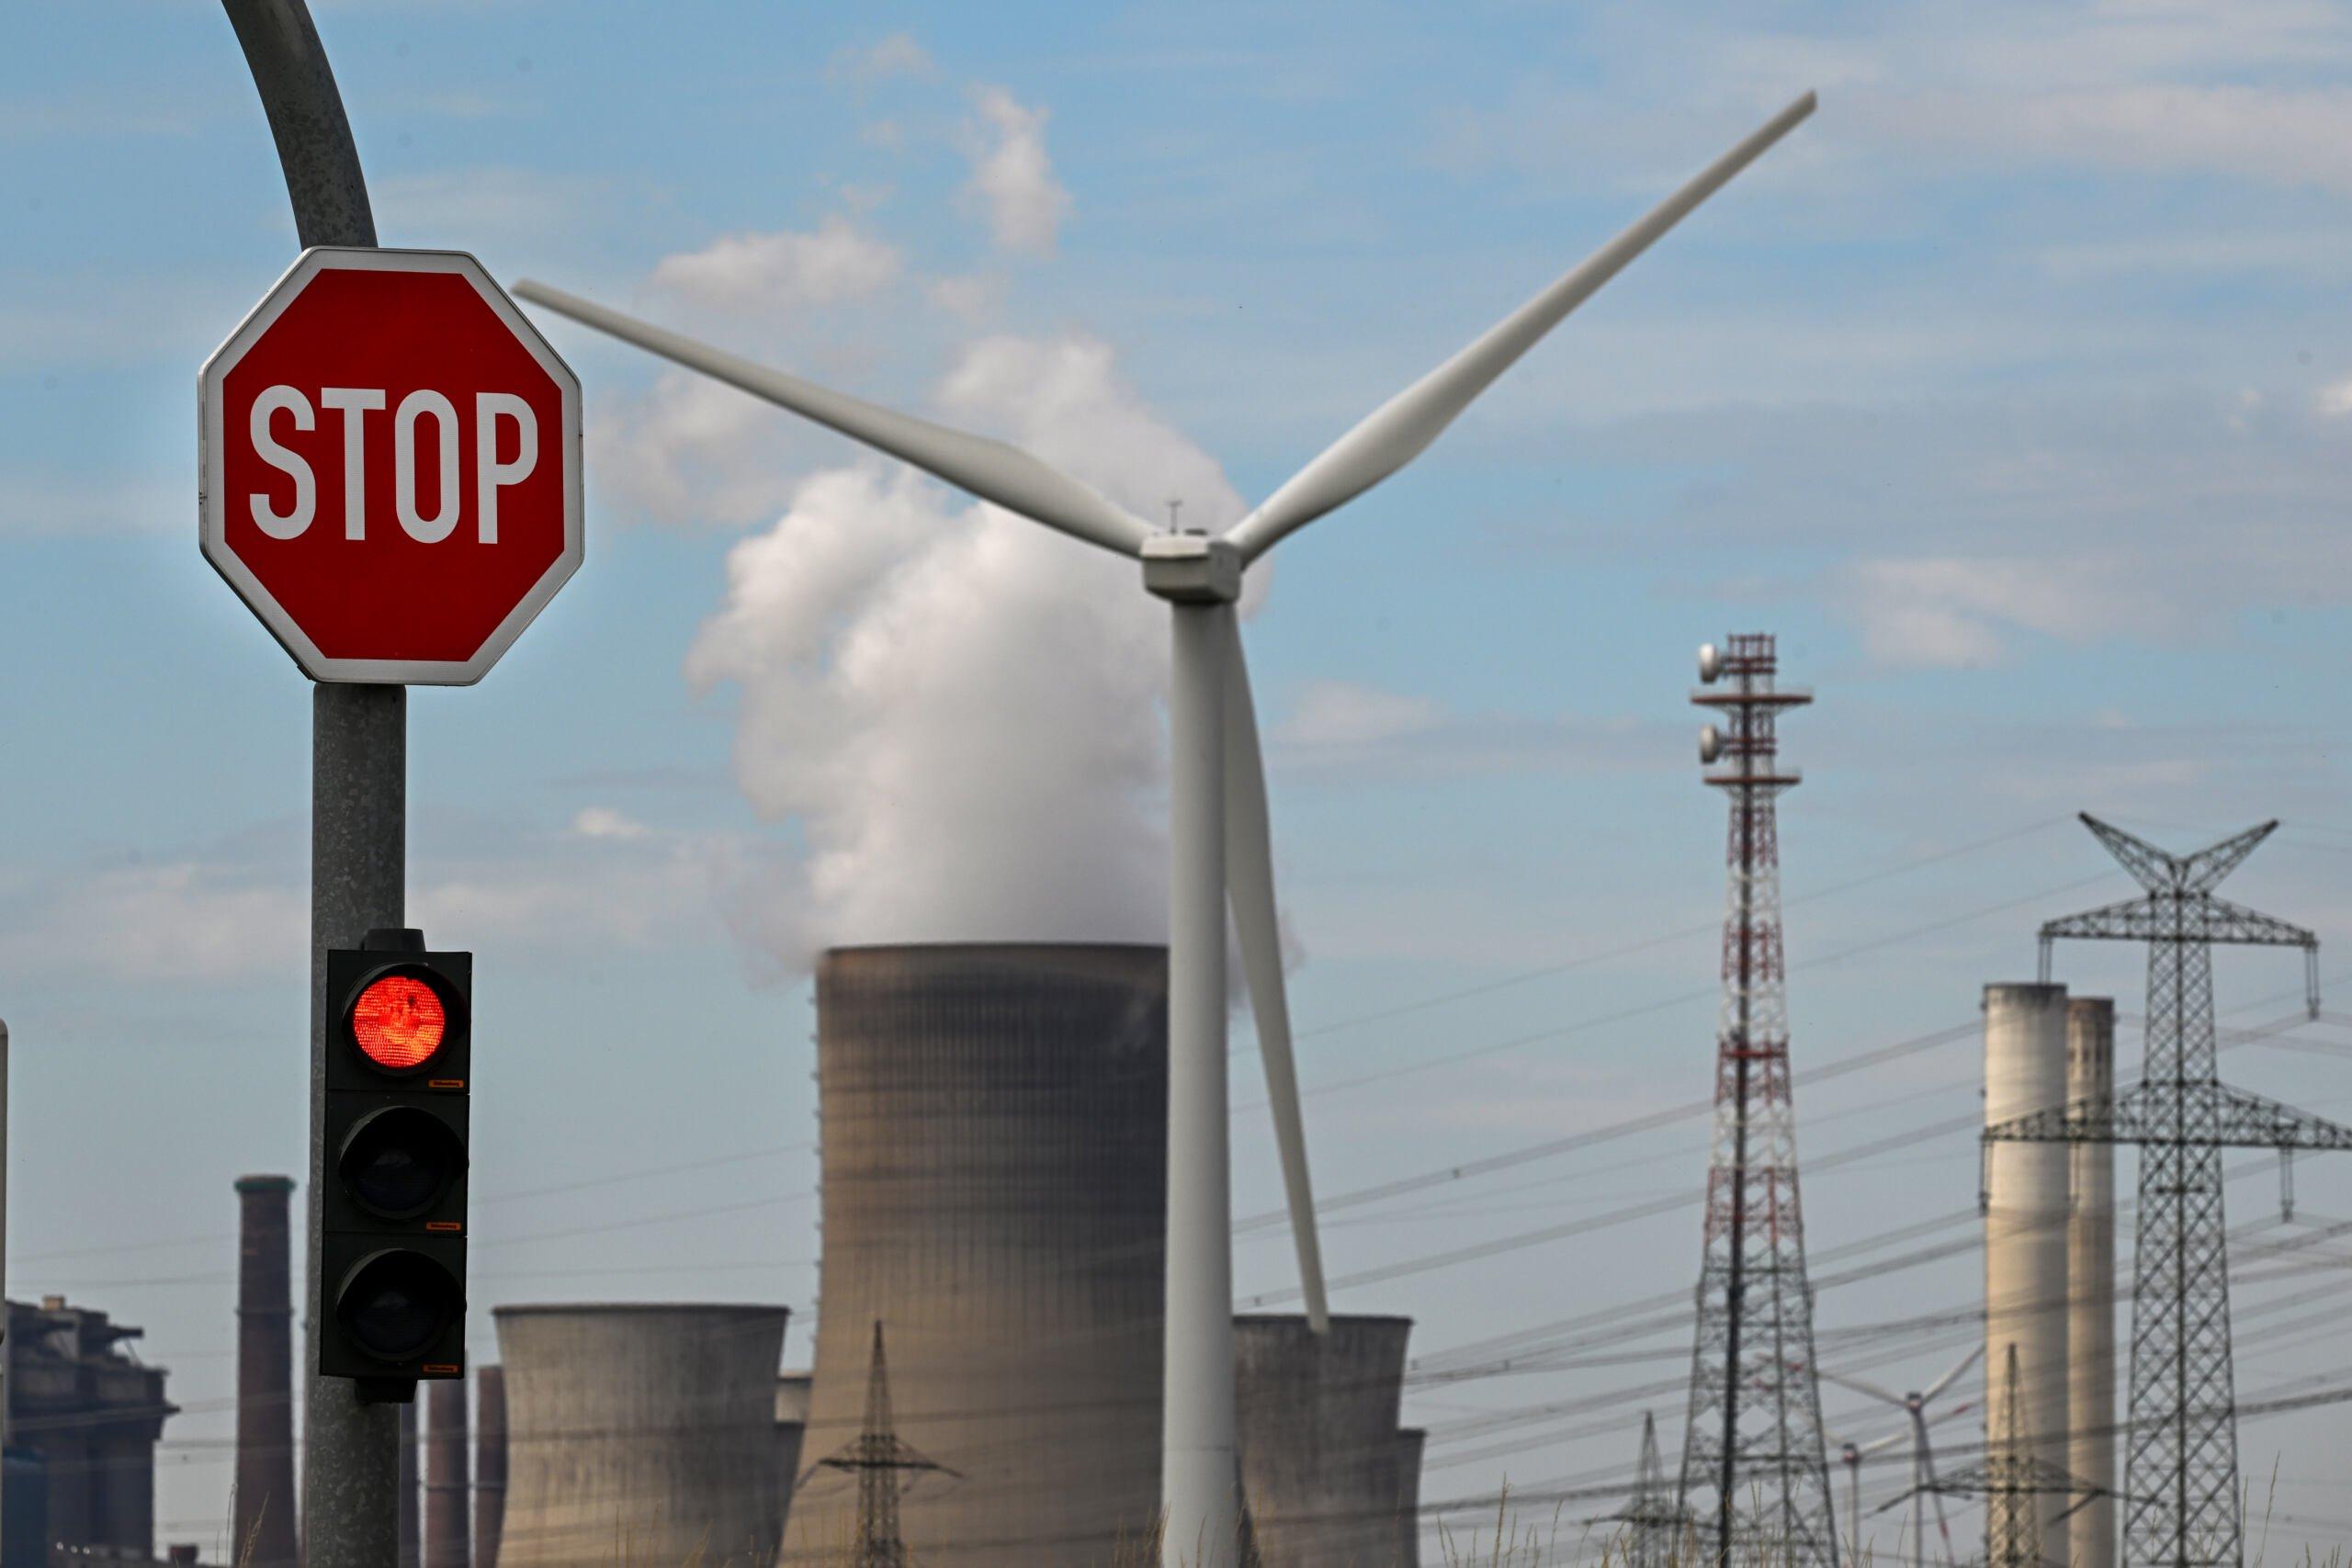 Znak stopu i turbina wiatrowa są widoczne przed elektrownią węglową prowadzoną przez niemieckiego dostawcę energii RWE w Niederaussem, w zachodnich Niemczech, 13 lipca 2022 roku. - W odpowiedzi na ograniczenie dostaw gazu z Rosji Niemcy reaktywowały zamknięte elektrownie węglowe, aby odciążyć gaz.